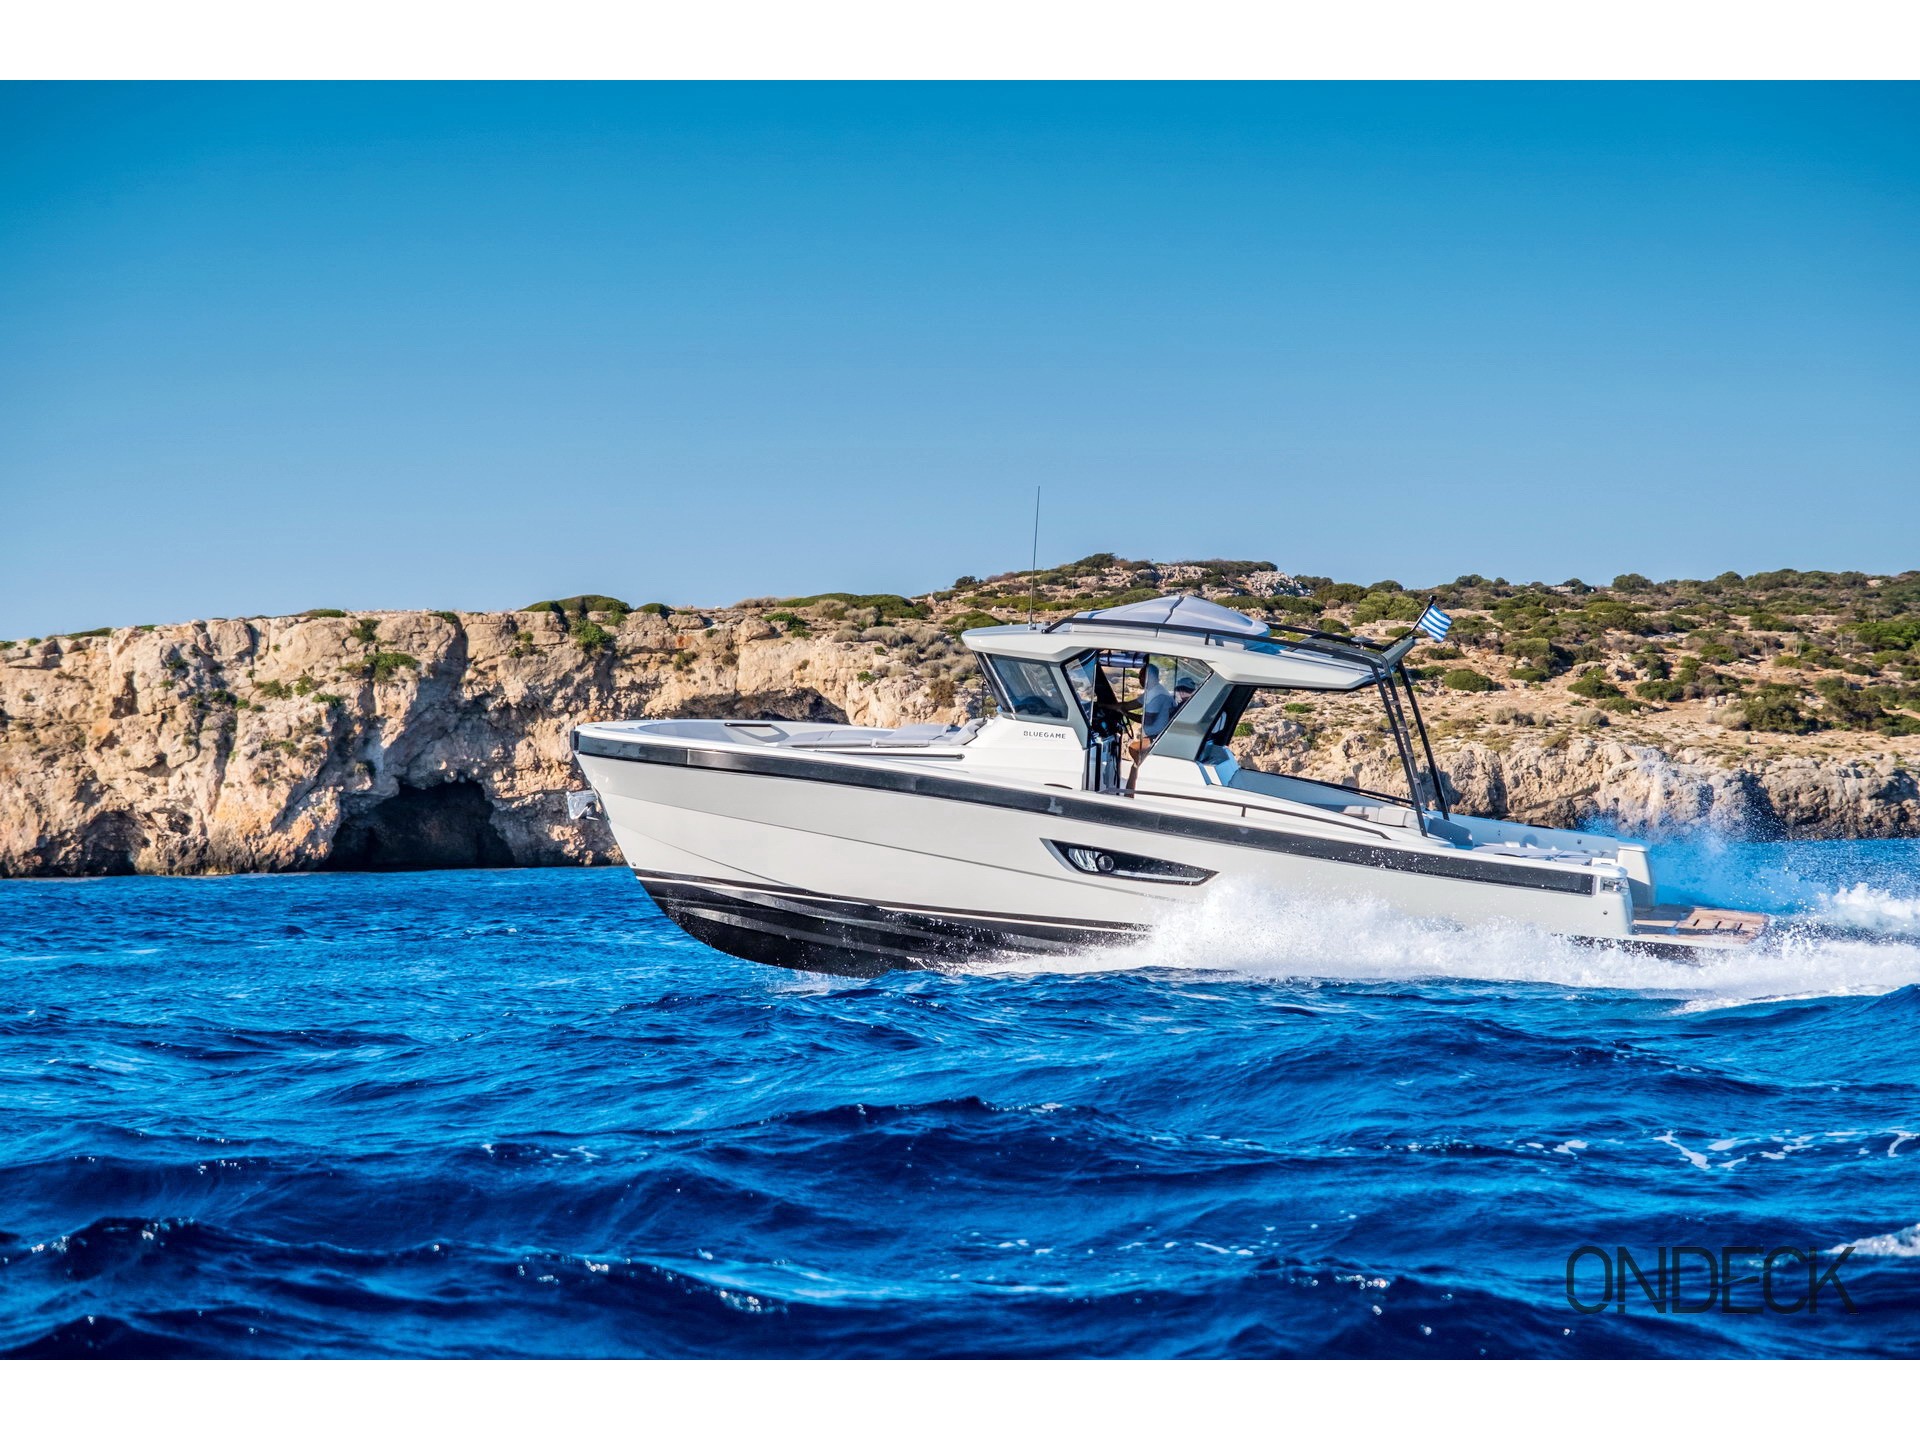 Bluegame BG42 - Motorboat rental worldwide & Boat hire in Greece Cyclades Islands Mykonos Mykonos 1